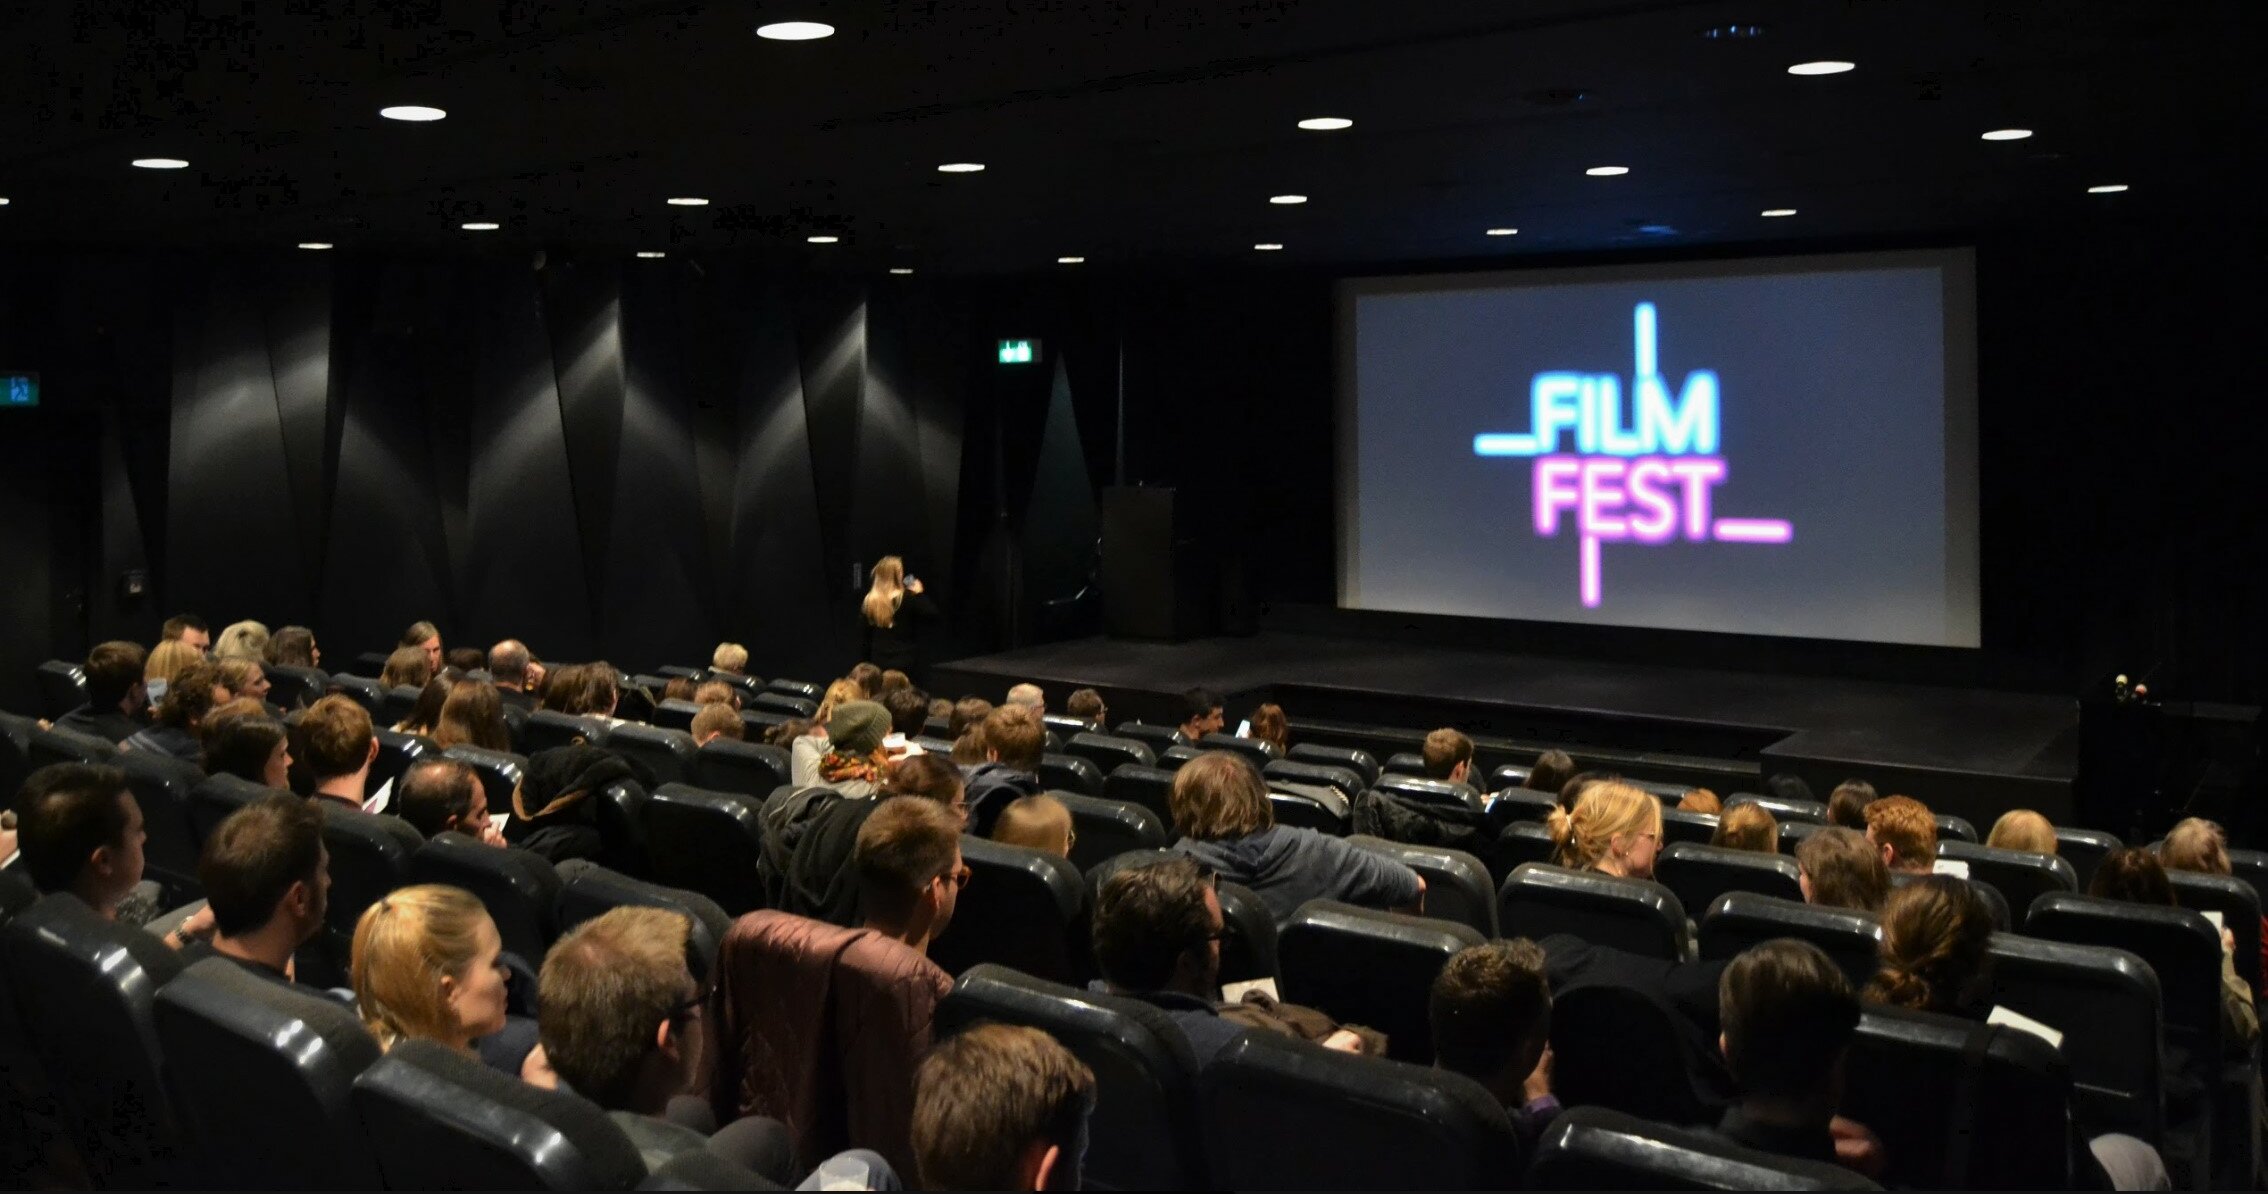 Zu sehen ist ein Kinosaal gefüllt mit Menschen, auf der Leinwand ist "Filmfest Düsseldorf" angezeigt.